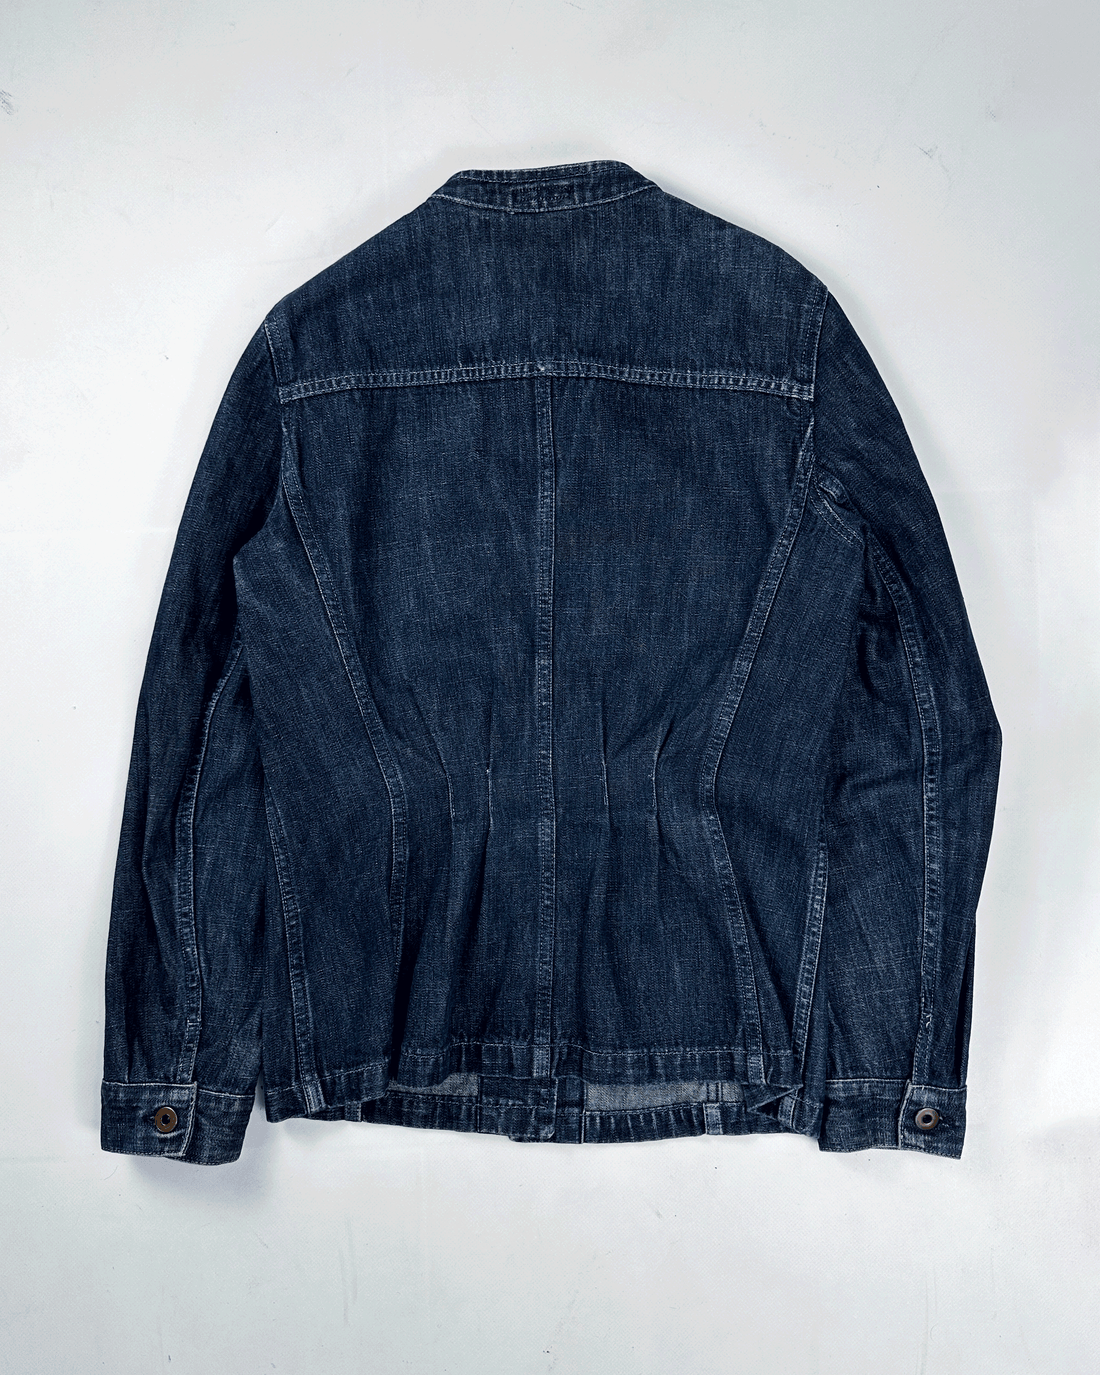 Miu Miu "Fiammato" Raw Denim Jacket 1990's